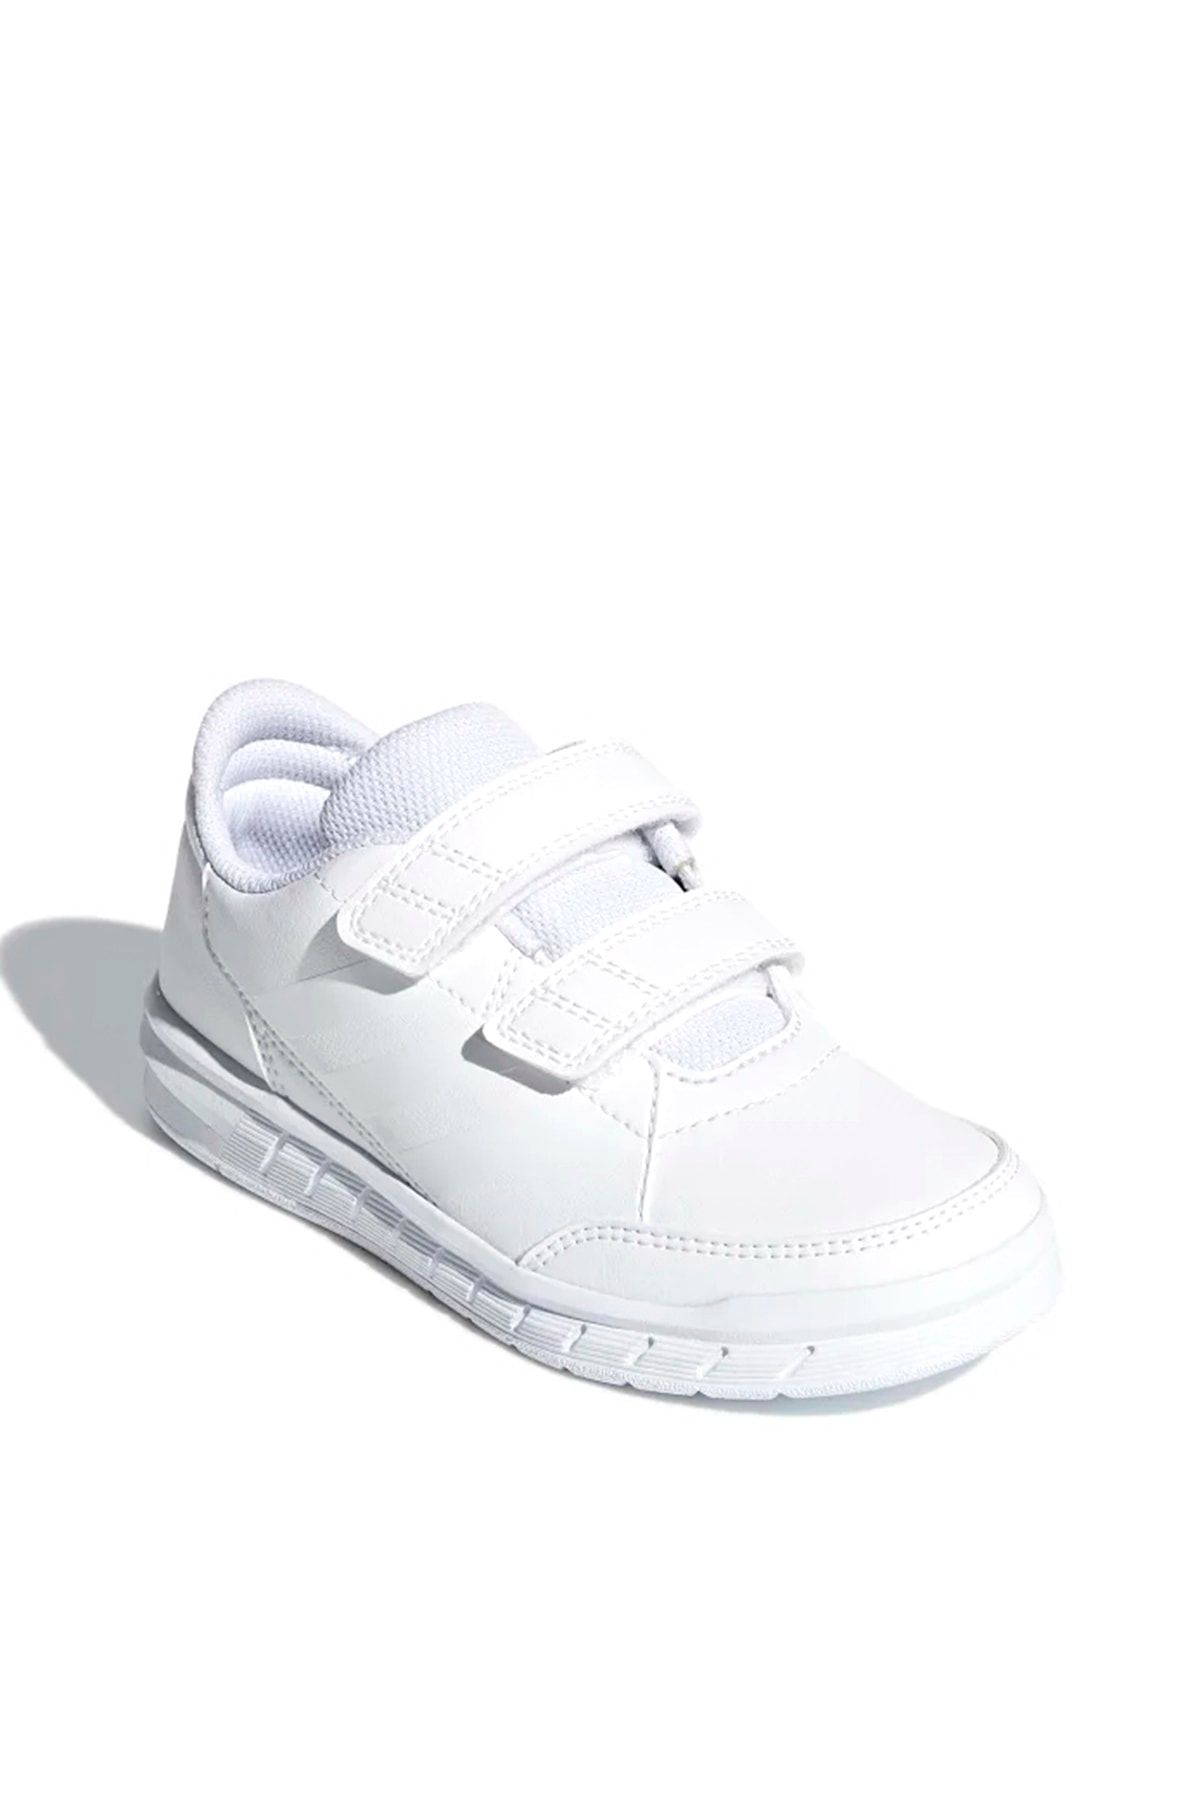 adidas Unisex Çocuk Beyaz Koşu Yürüyüş Spor Ayakkabı